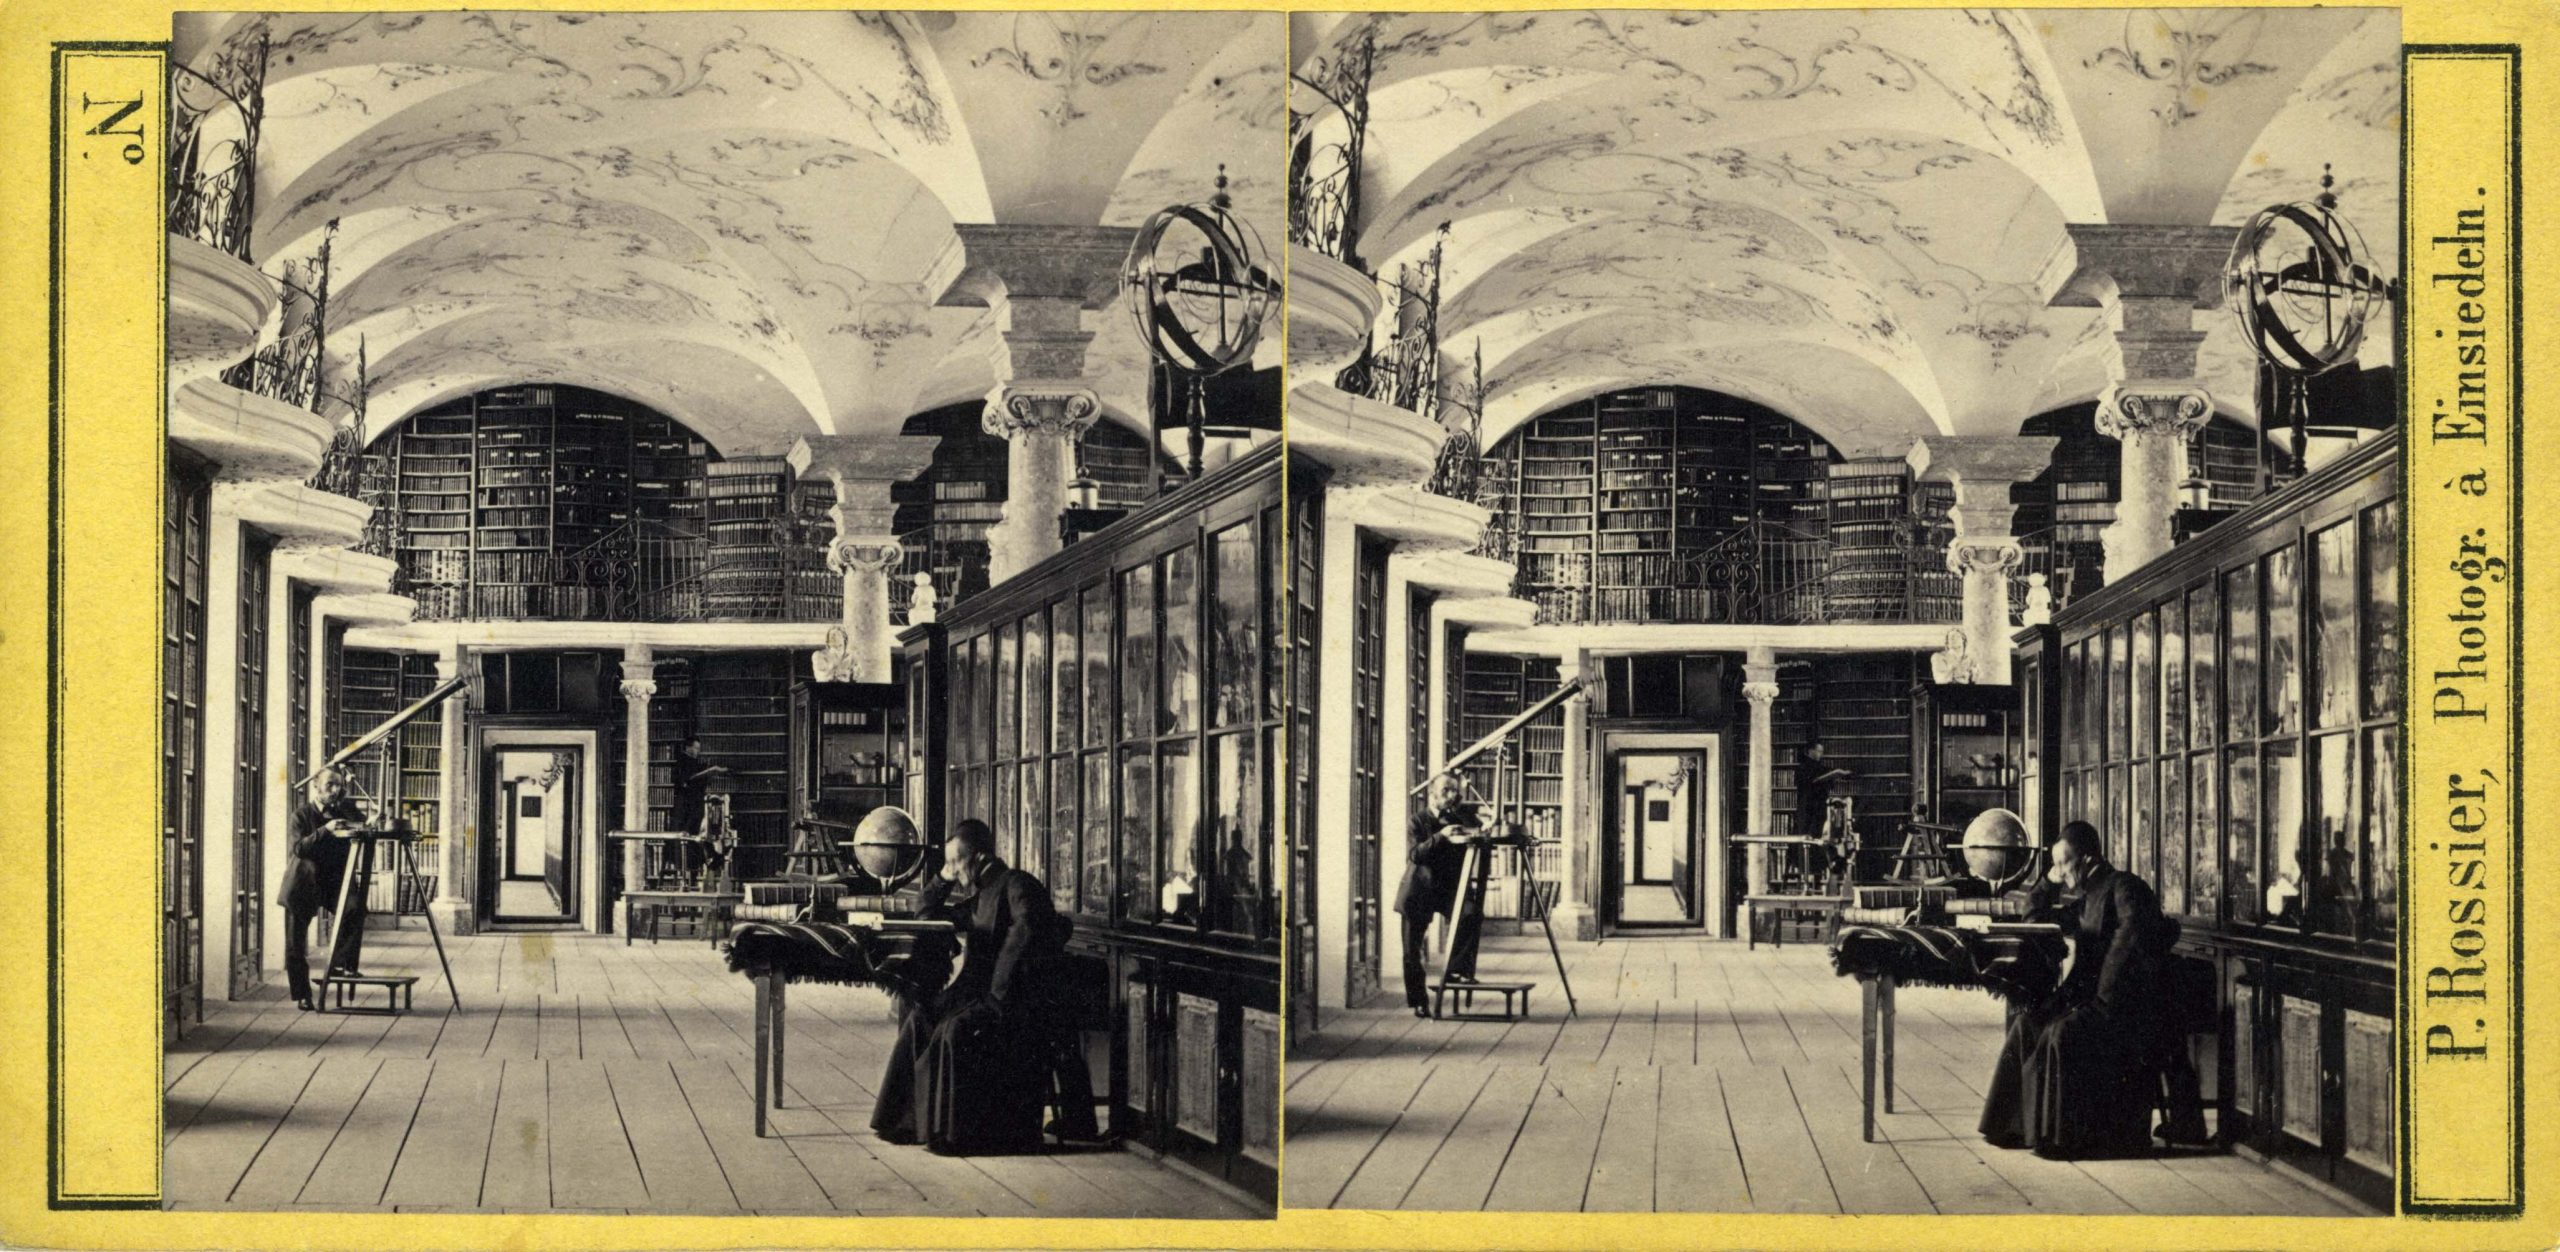 Gall Morel beim Studium in der Stiftdsbibliothek, fotografiert von Pierre Rossier, um 1860 (Klosterarchiv)